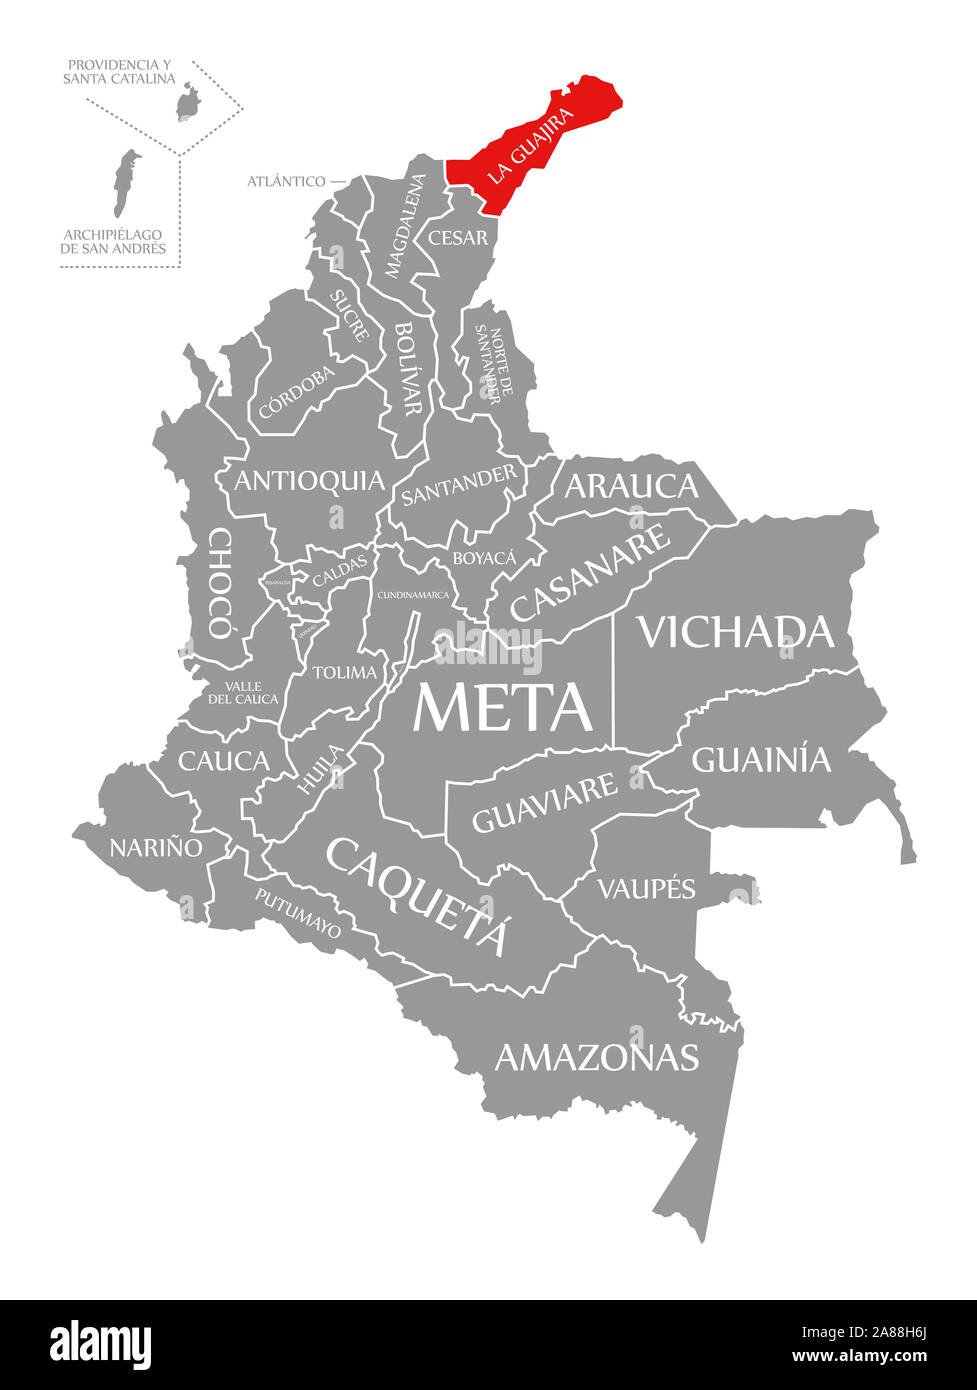 La Guajira en surbrillance rouge dans la carte de la Colombie Banque D'Images